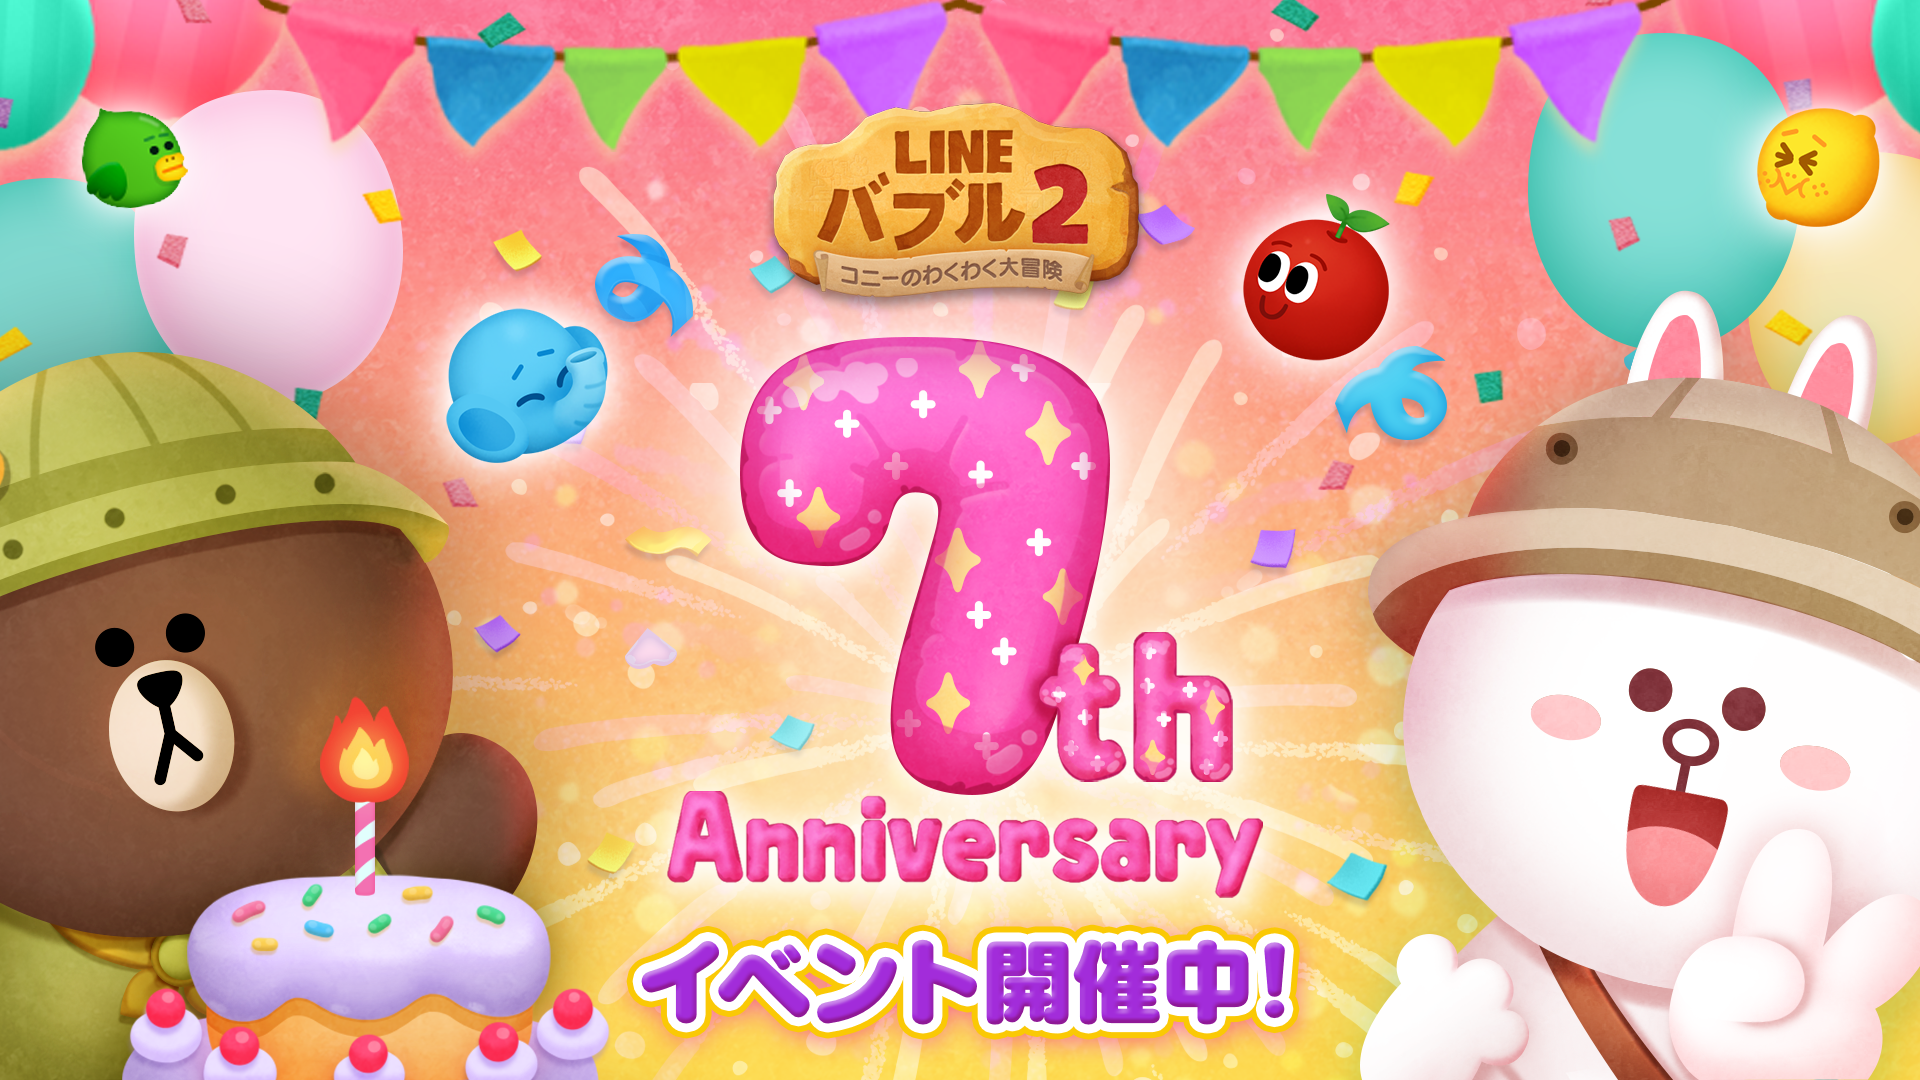 Line バブル2 7周年 7周年記念イベントを開催 Line株式会社のプレスリリース